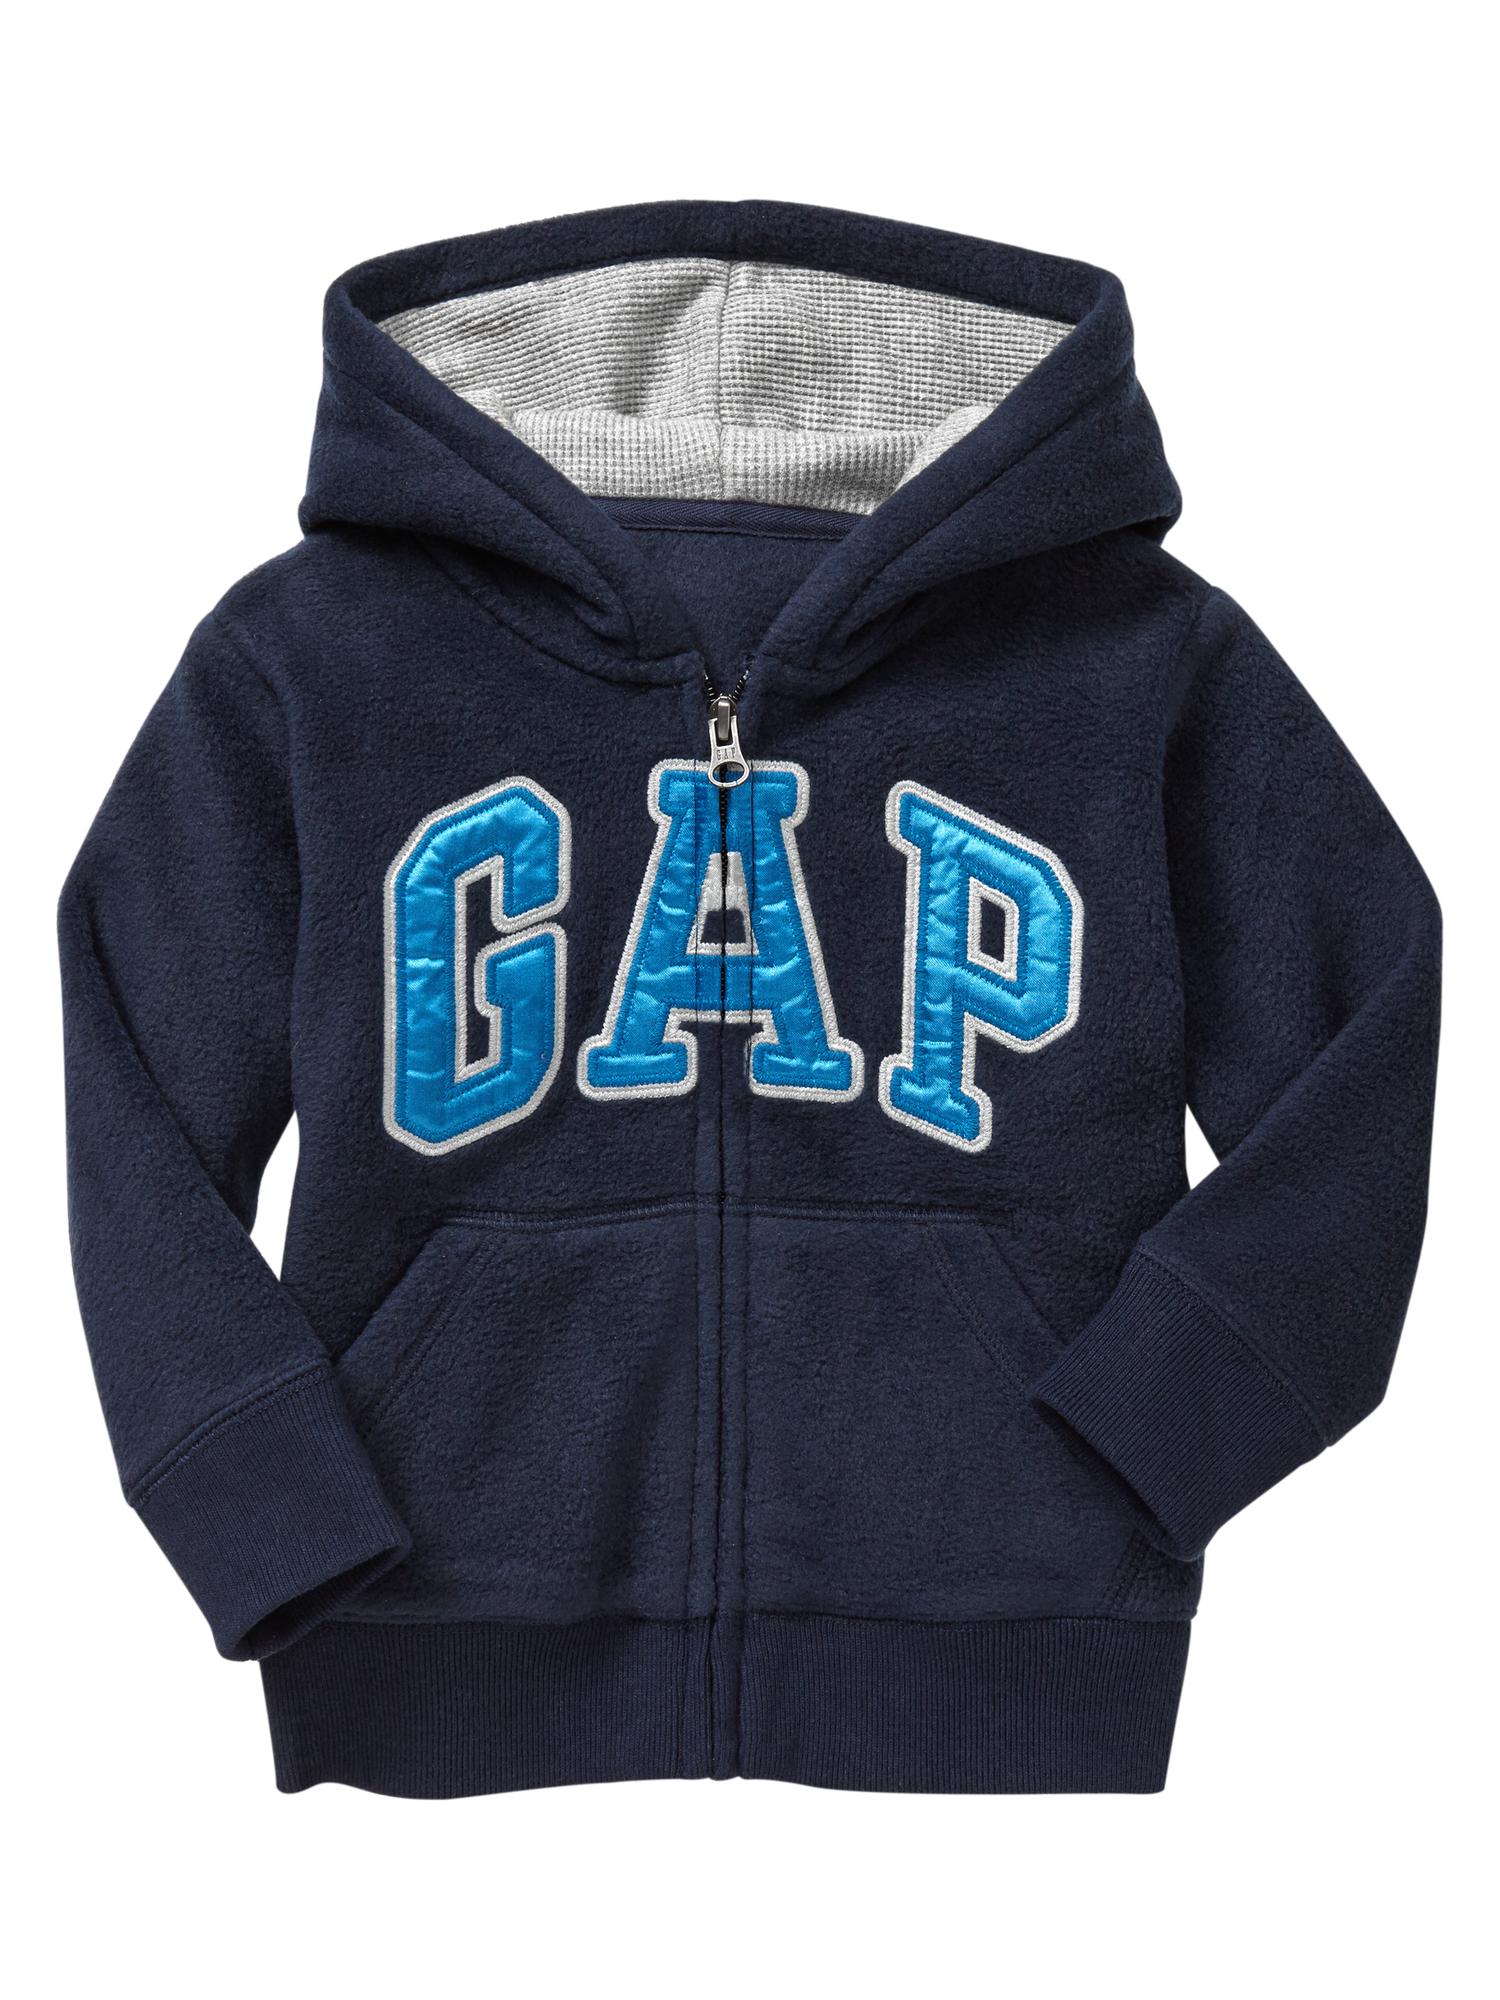 Pro Fleece arch logo hoodie | Gap